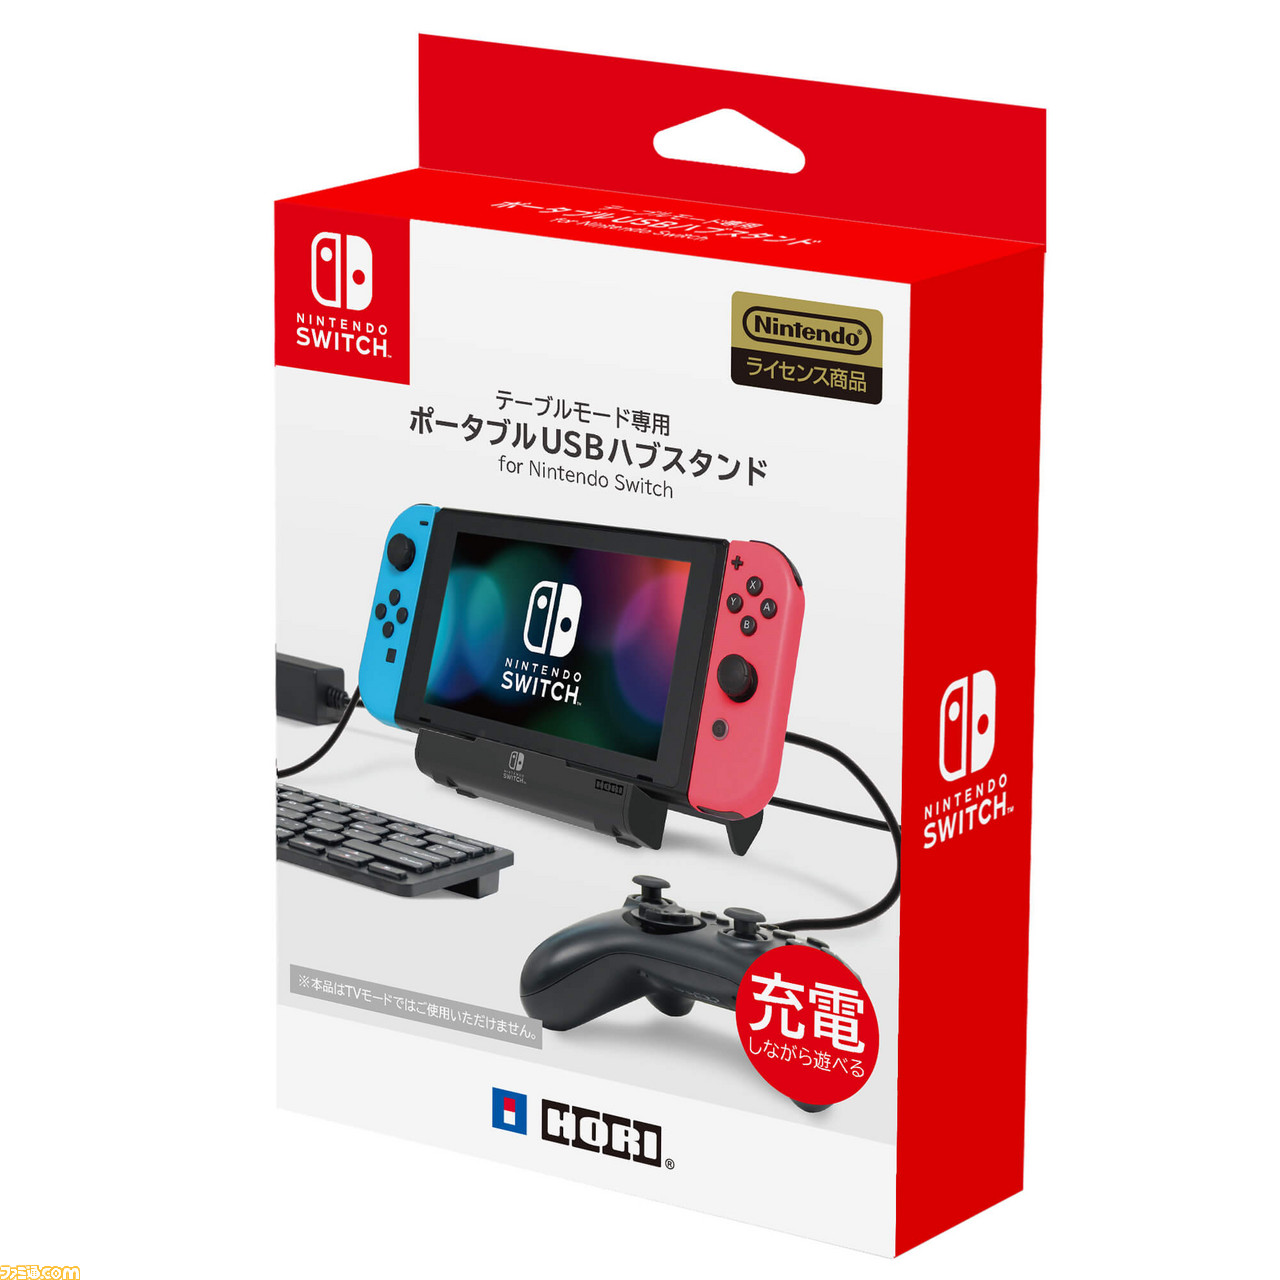 Nintendo Switchのテーブルモード専用ポータブルusbハブスタンドが登場 ファミ通 Com